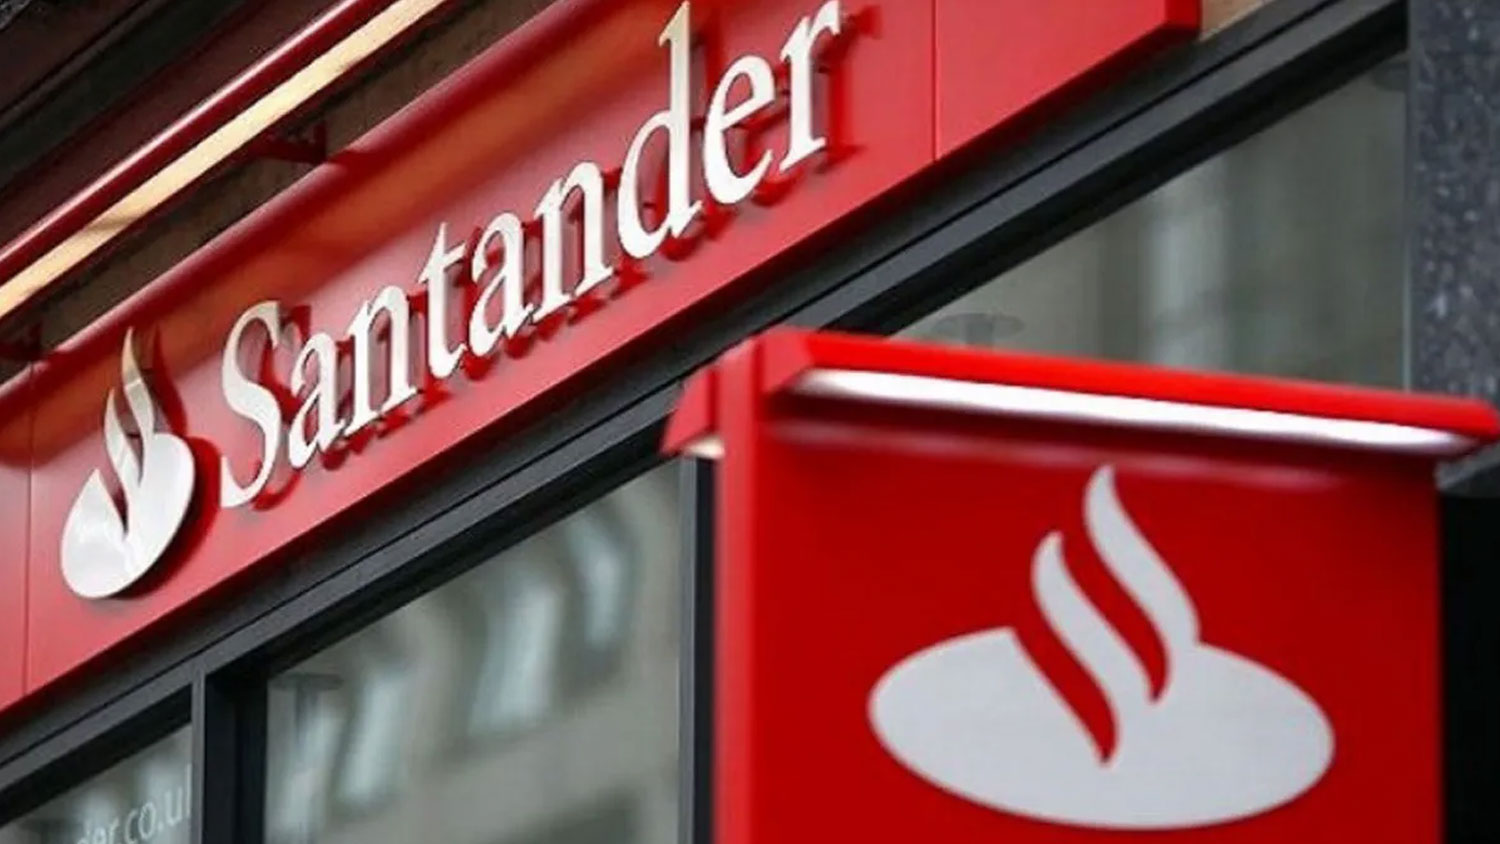 Tasa de crédito hipotecario histórica del 7.75% proporcionada por el banco Santander